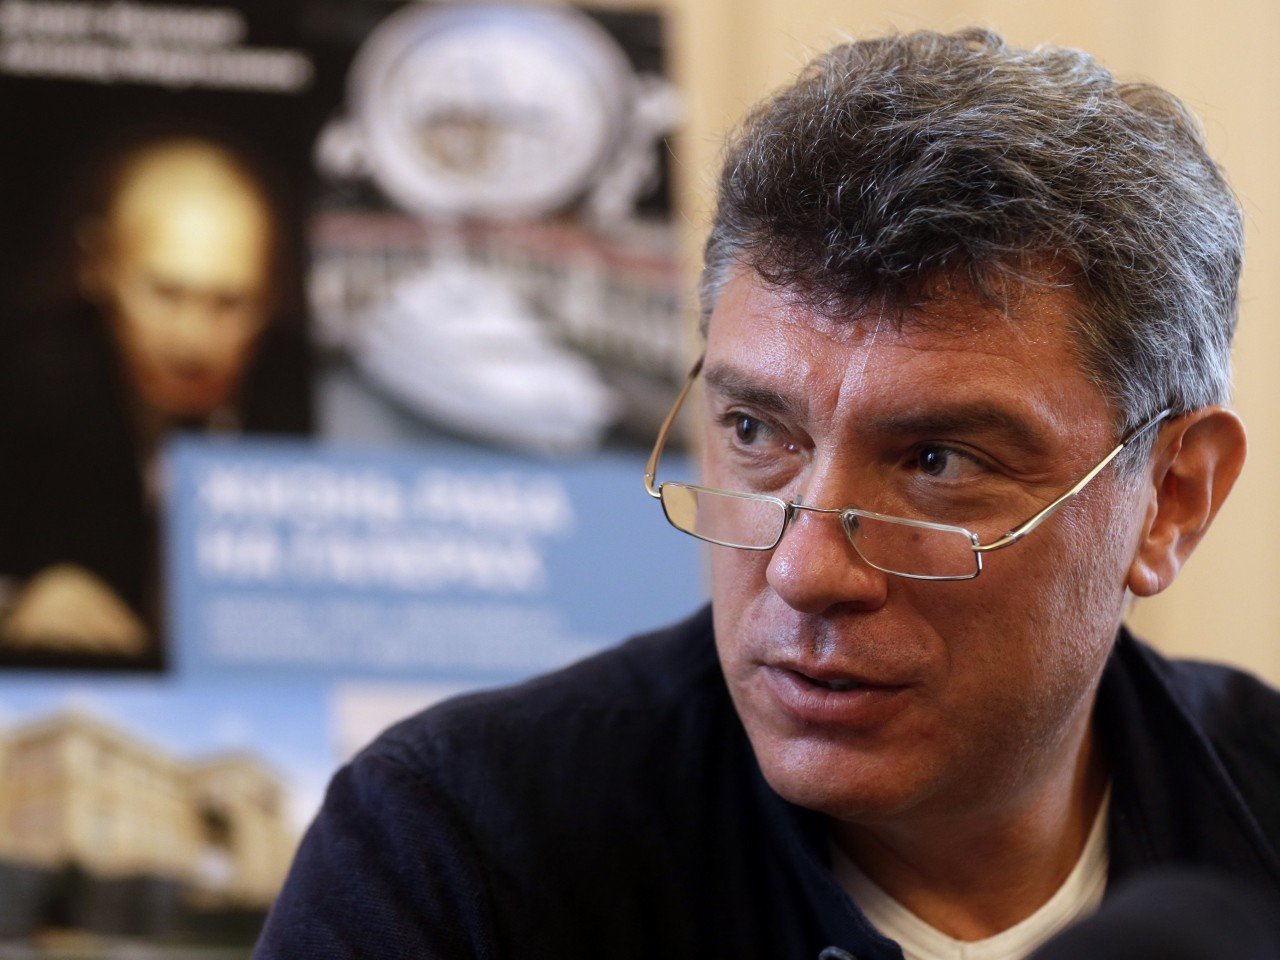 СМИ: Немцов хотел эмигрировать в Литву, опасаясь за свою жизнь